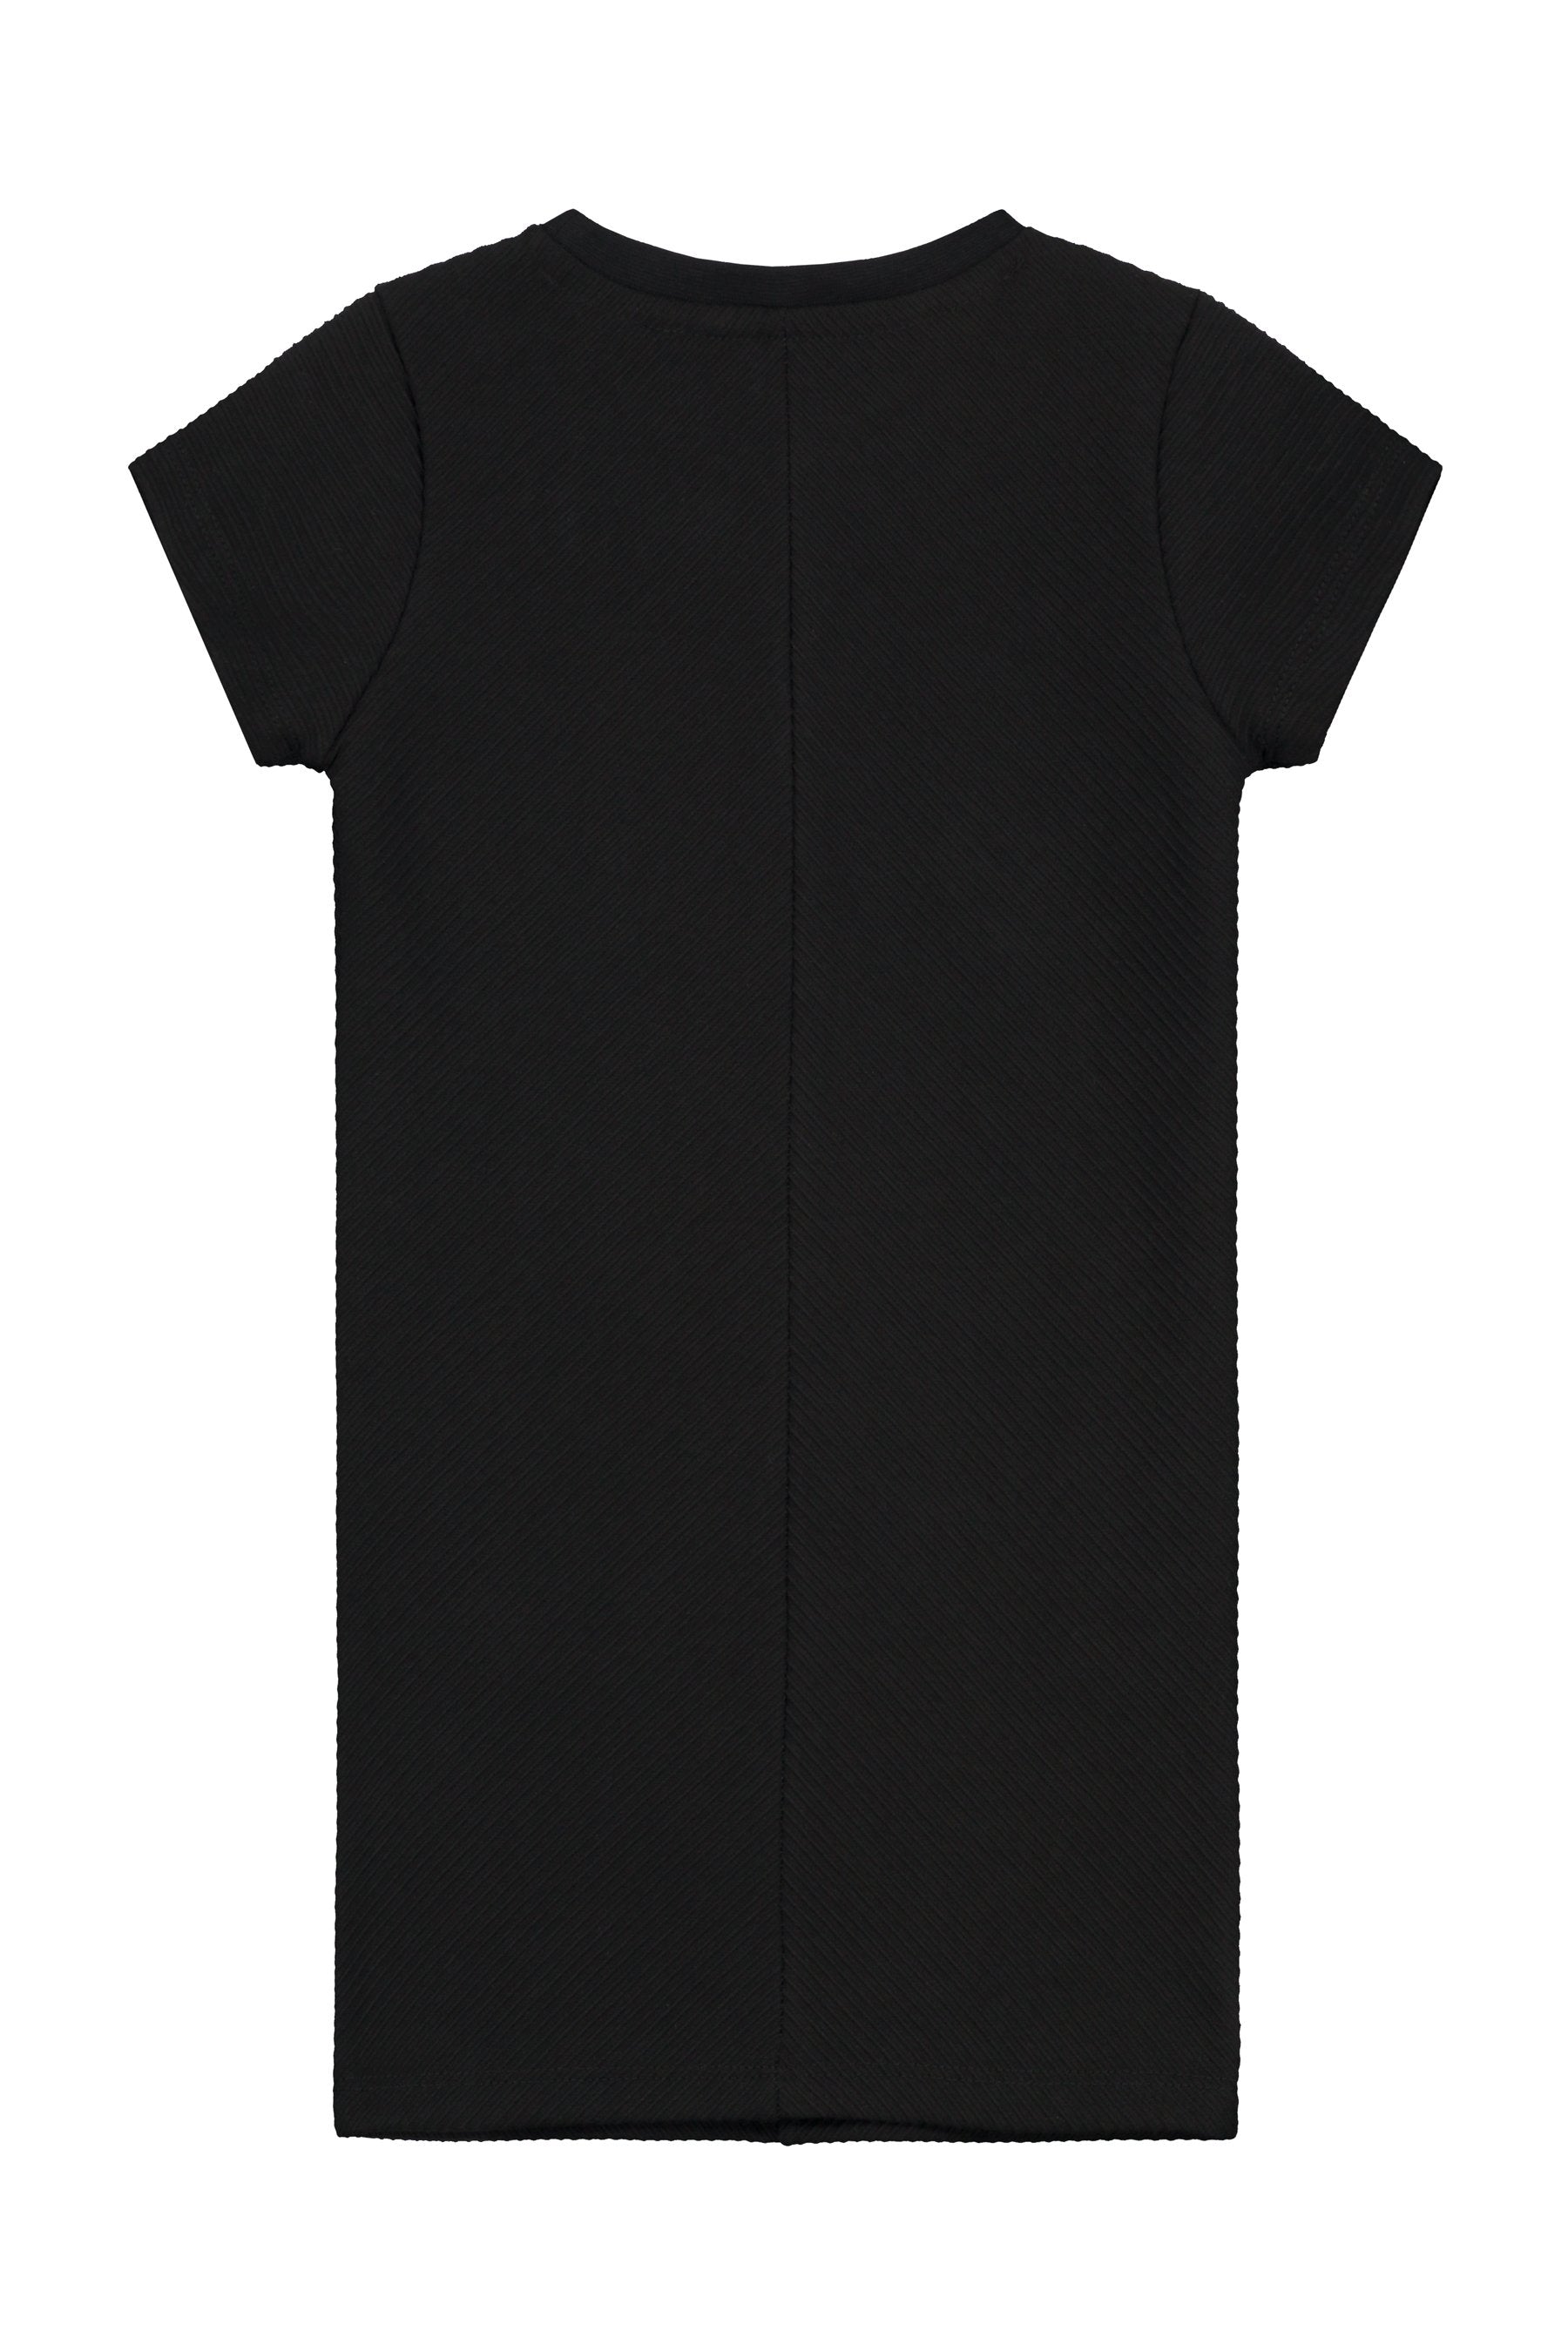 Meisjes Dress van Little Levv in de kleur Black in maat 116.